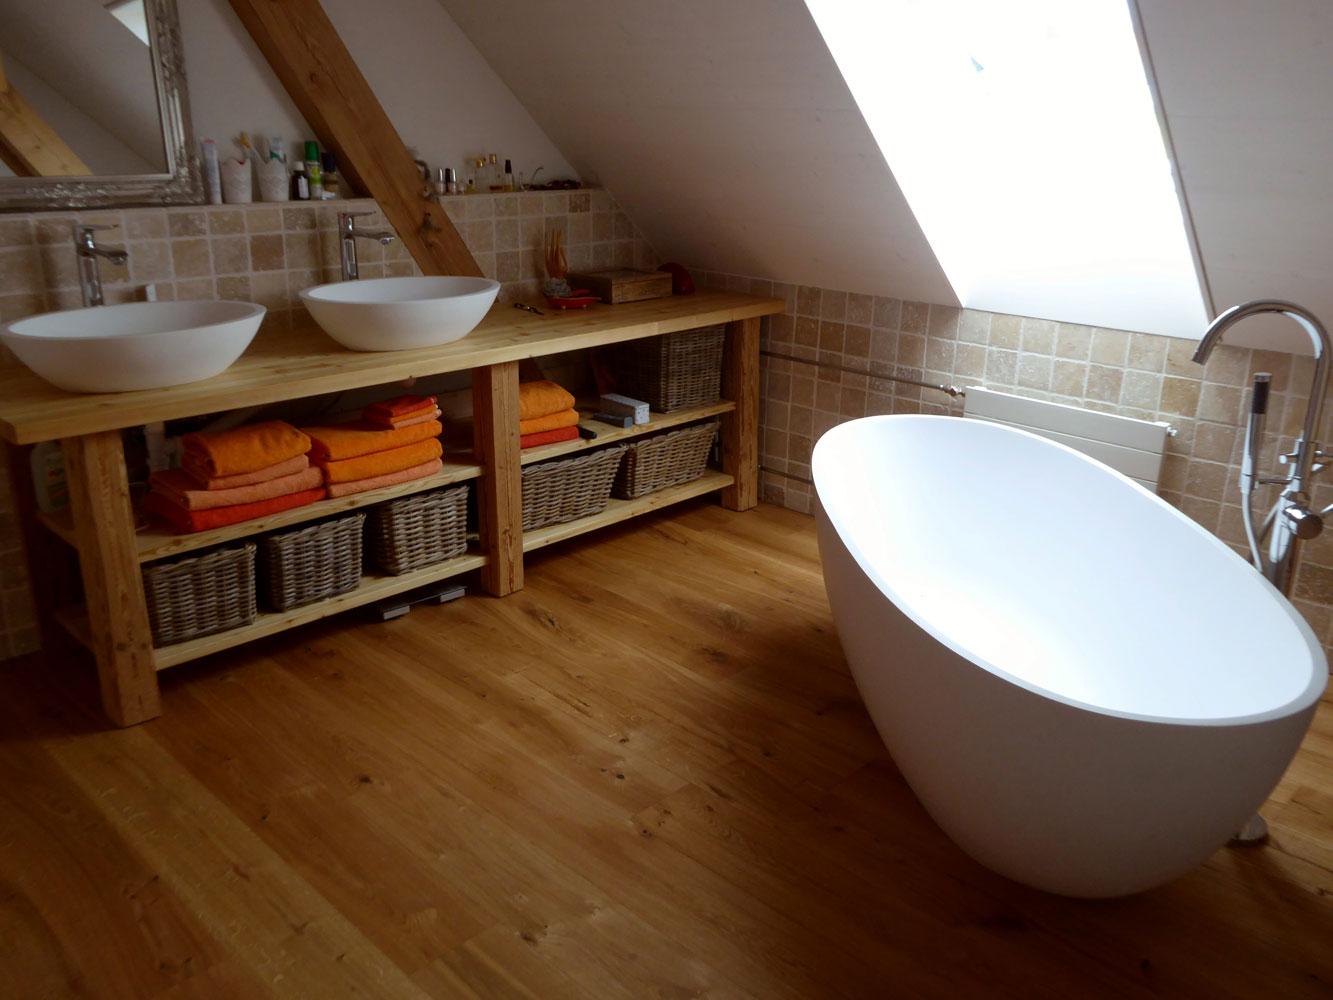 Badezimmer mit freistehender Badewanne Piemont Medio #dachschräge #badewanne #badezimmer ©Bädermax